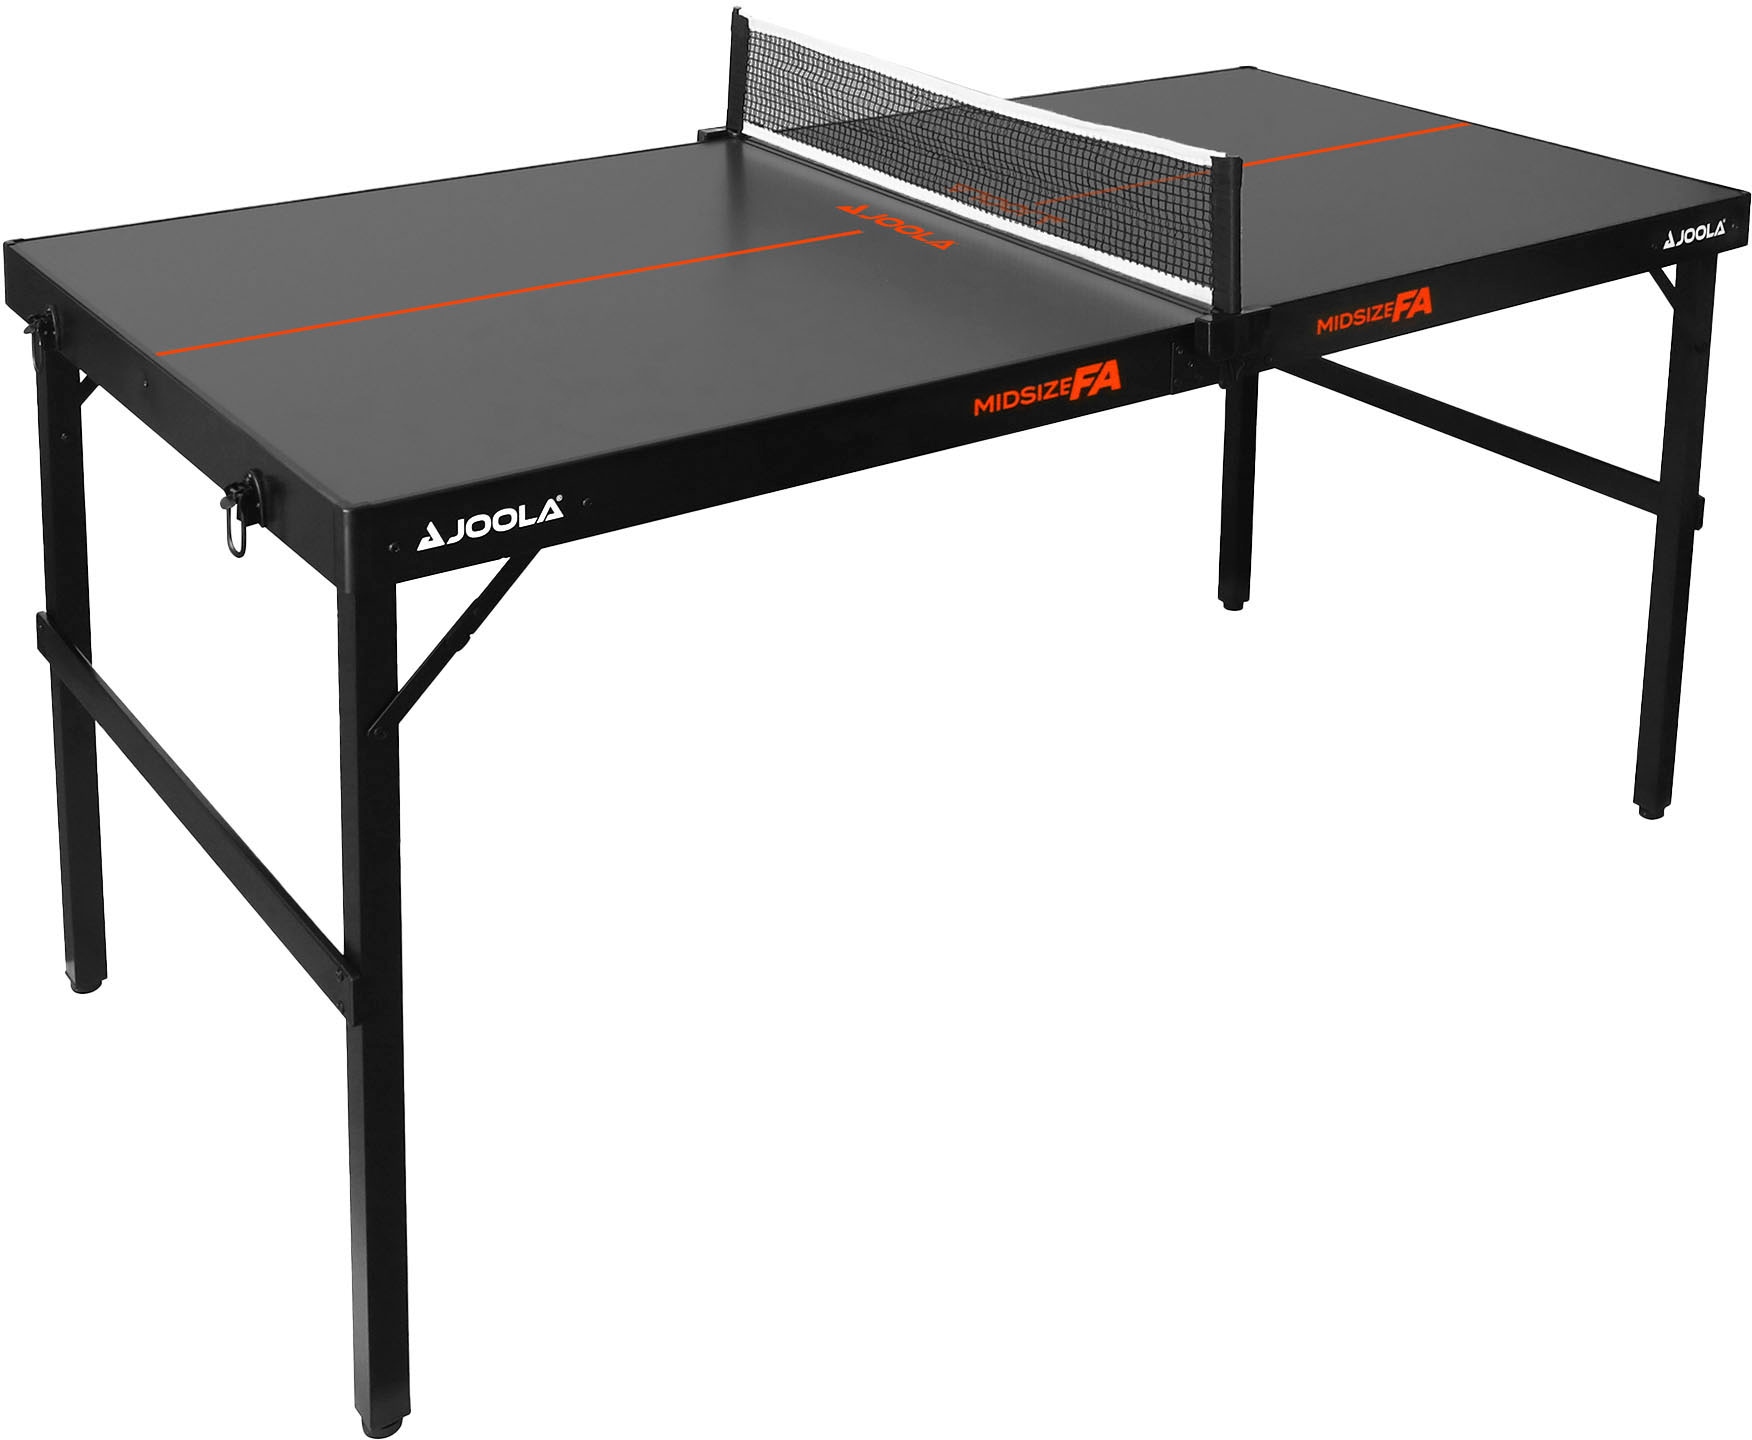 Joola Mini-Tischtennisplatte »Midsize FA«, Tischtennistisch im modernen Design inklusive Tischtennisnetz - 12 kg